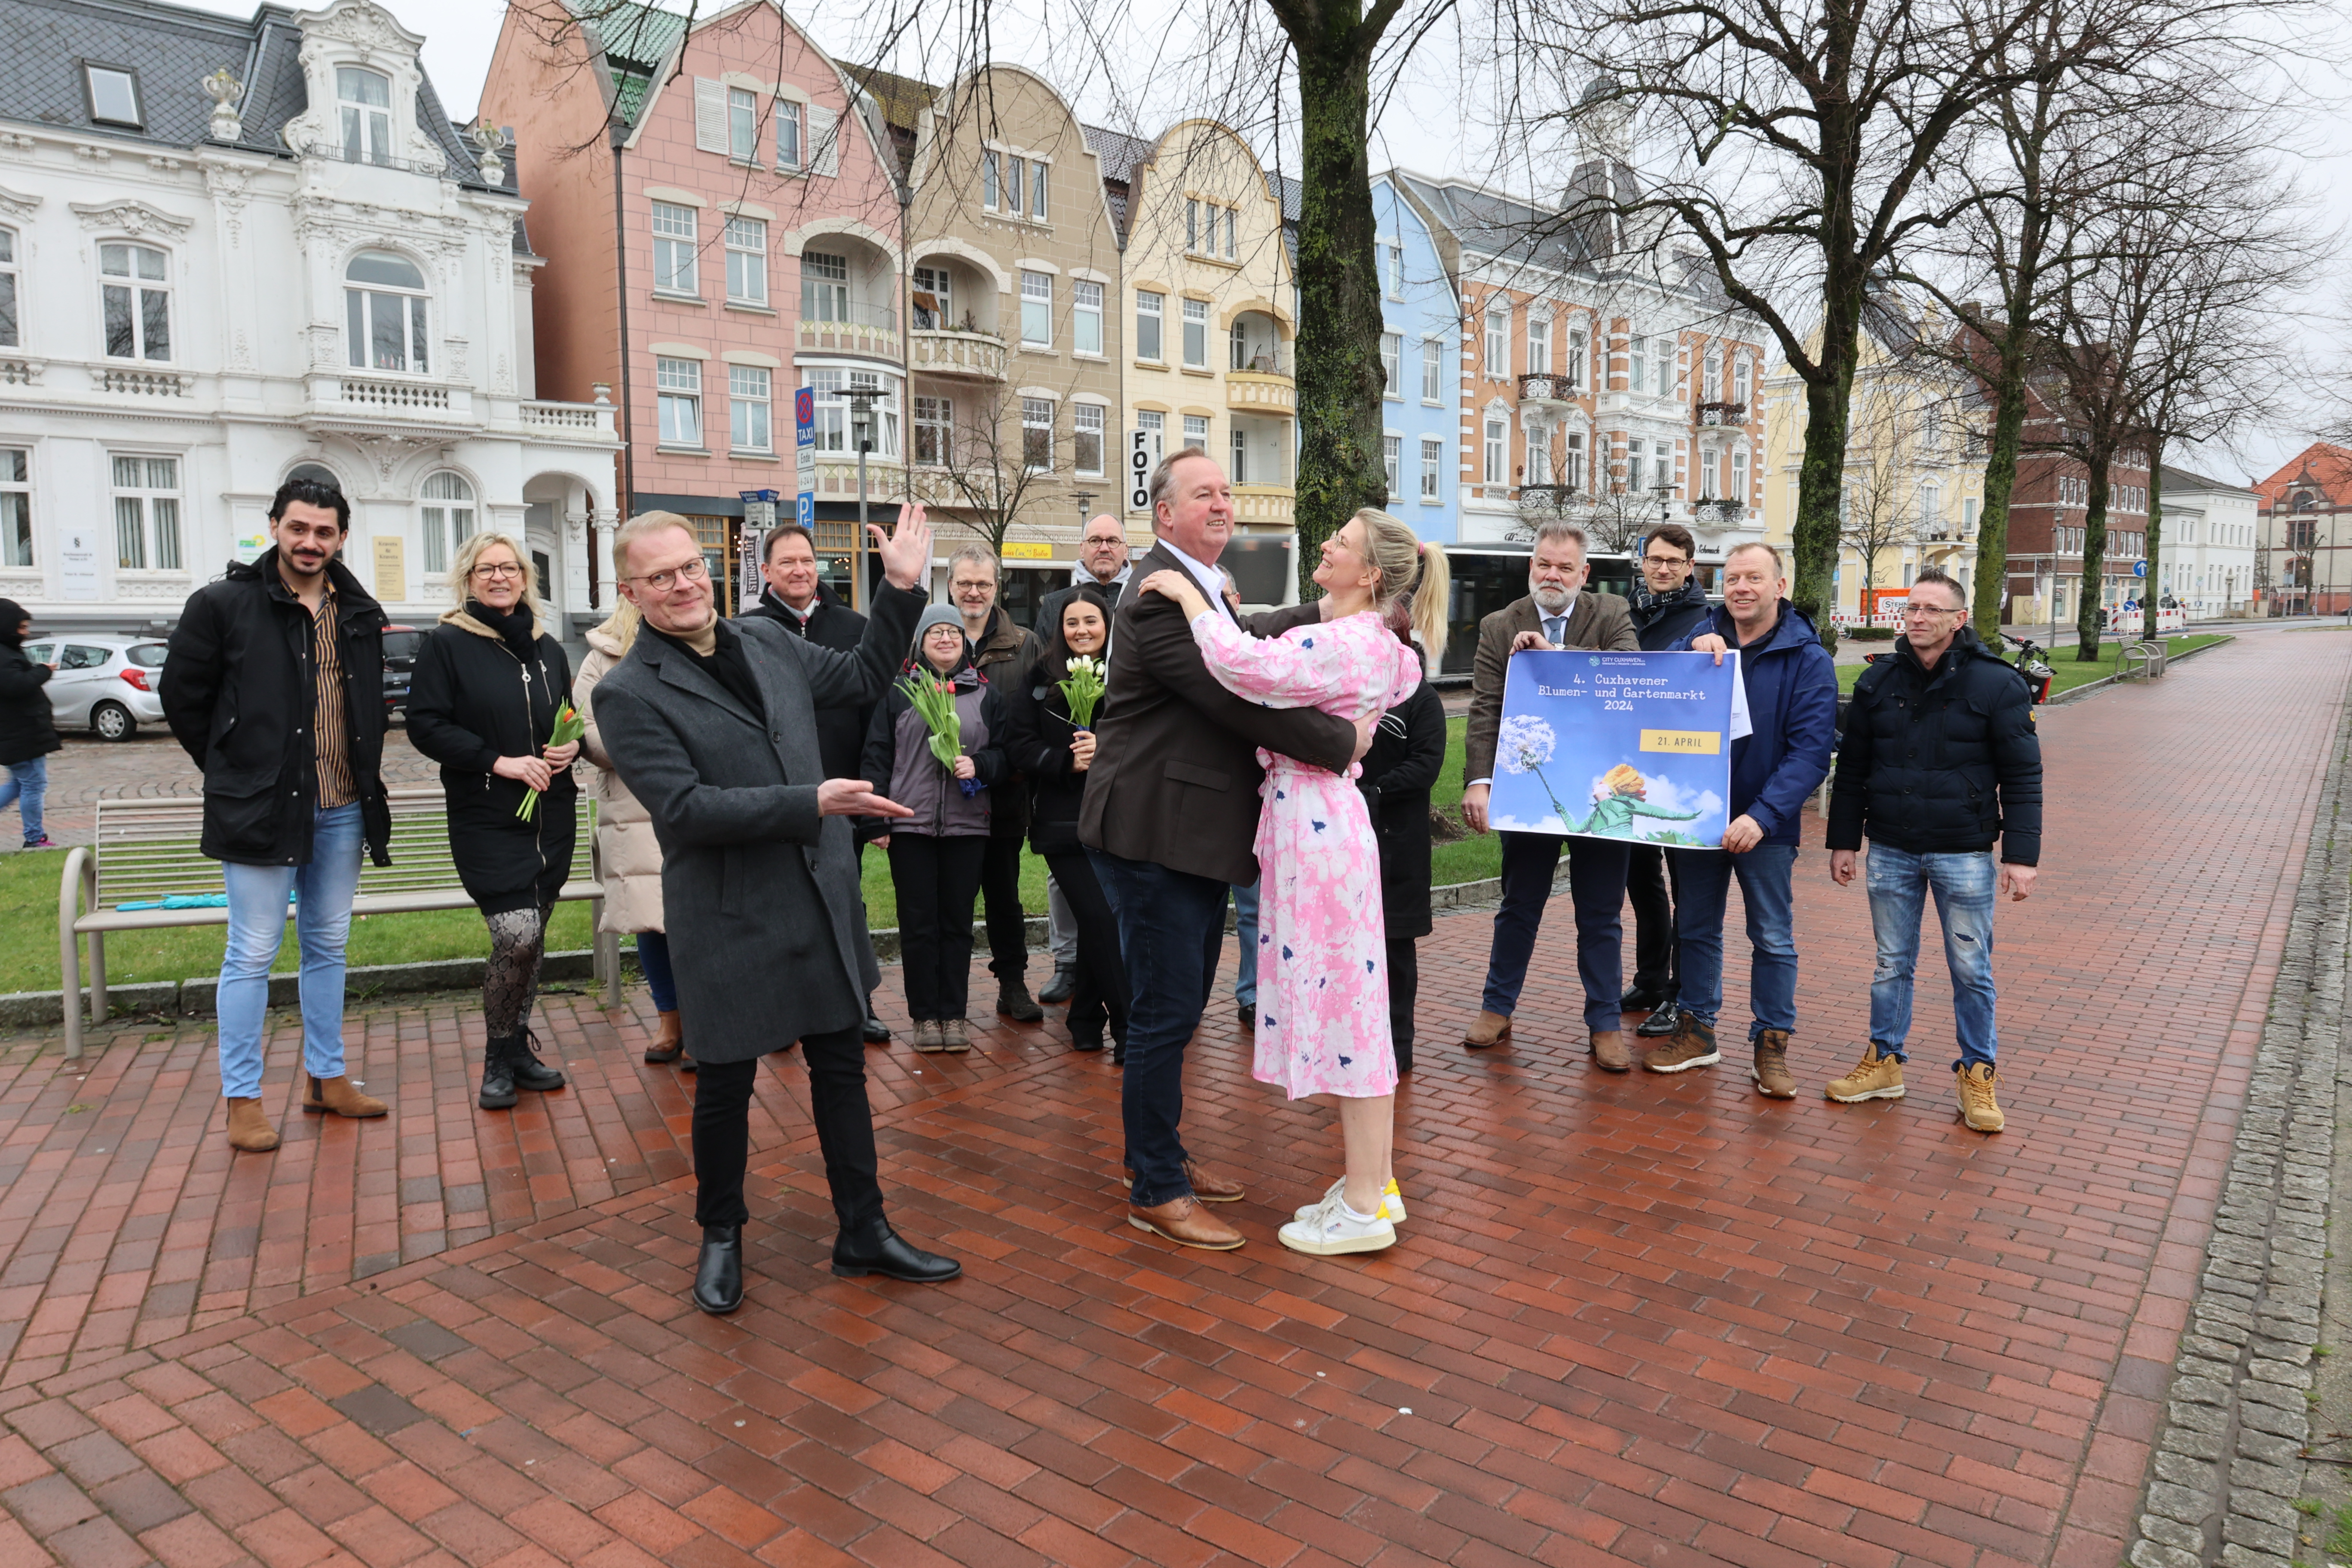 Weltrekordversuch beim Cuxhavener Blumenmarkt: Gemeinsam im Walzertakt tanzen